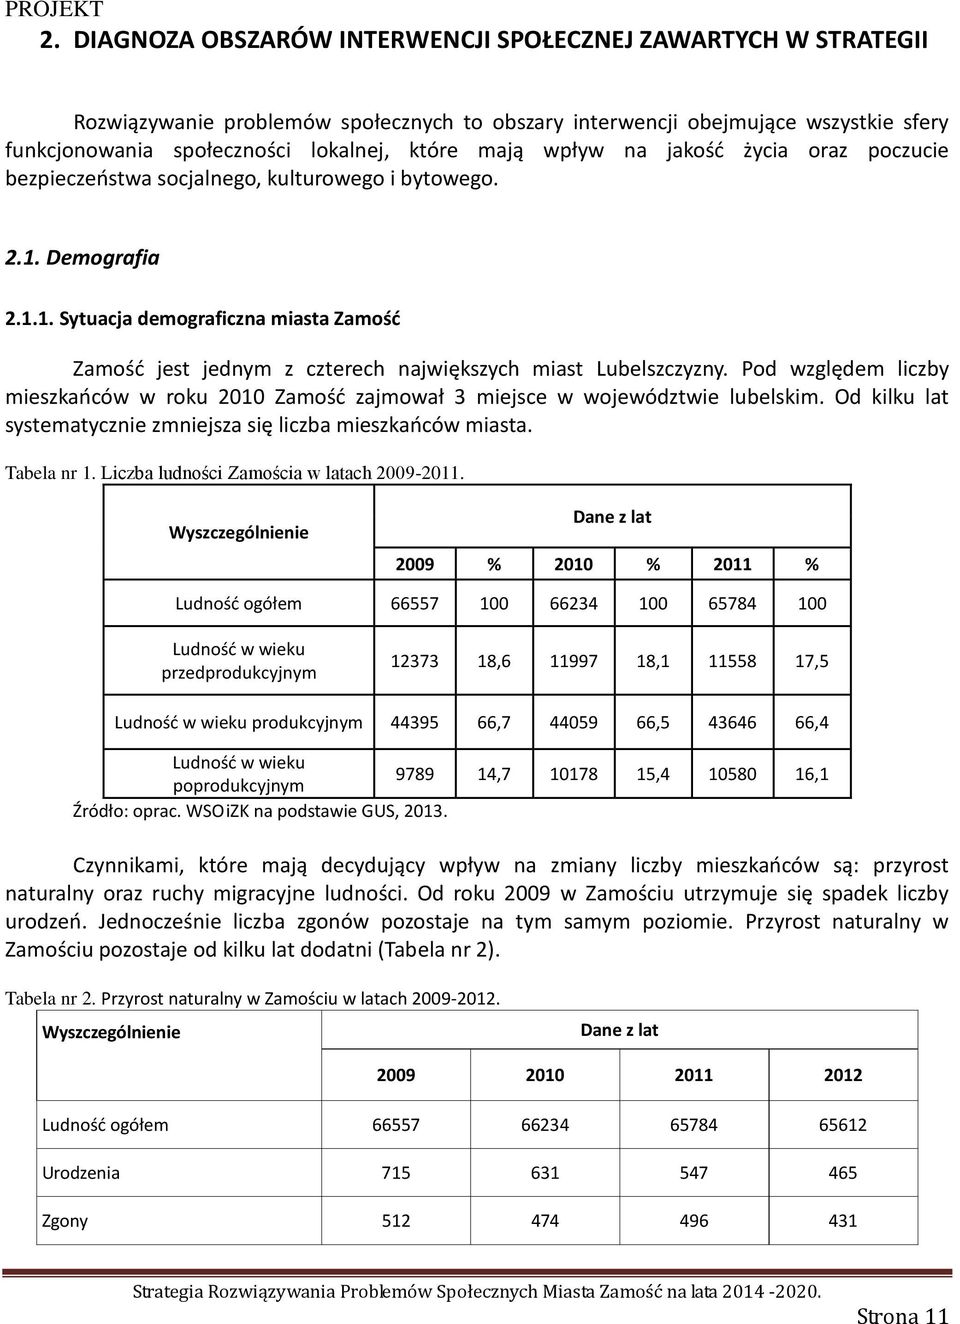 Pod względem liczby mieszkańców w roku 2010 Zamość zajmował 3 miejsce w województwie lubelskim. Od kilku lat systematycznie zmniejsza się liczba mieszkańców miasta. Tabela nr 1.